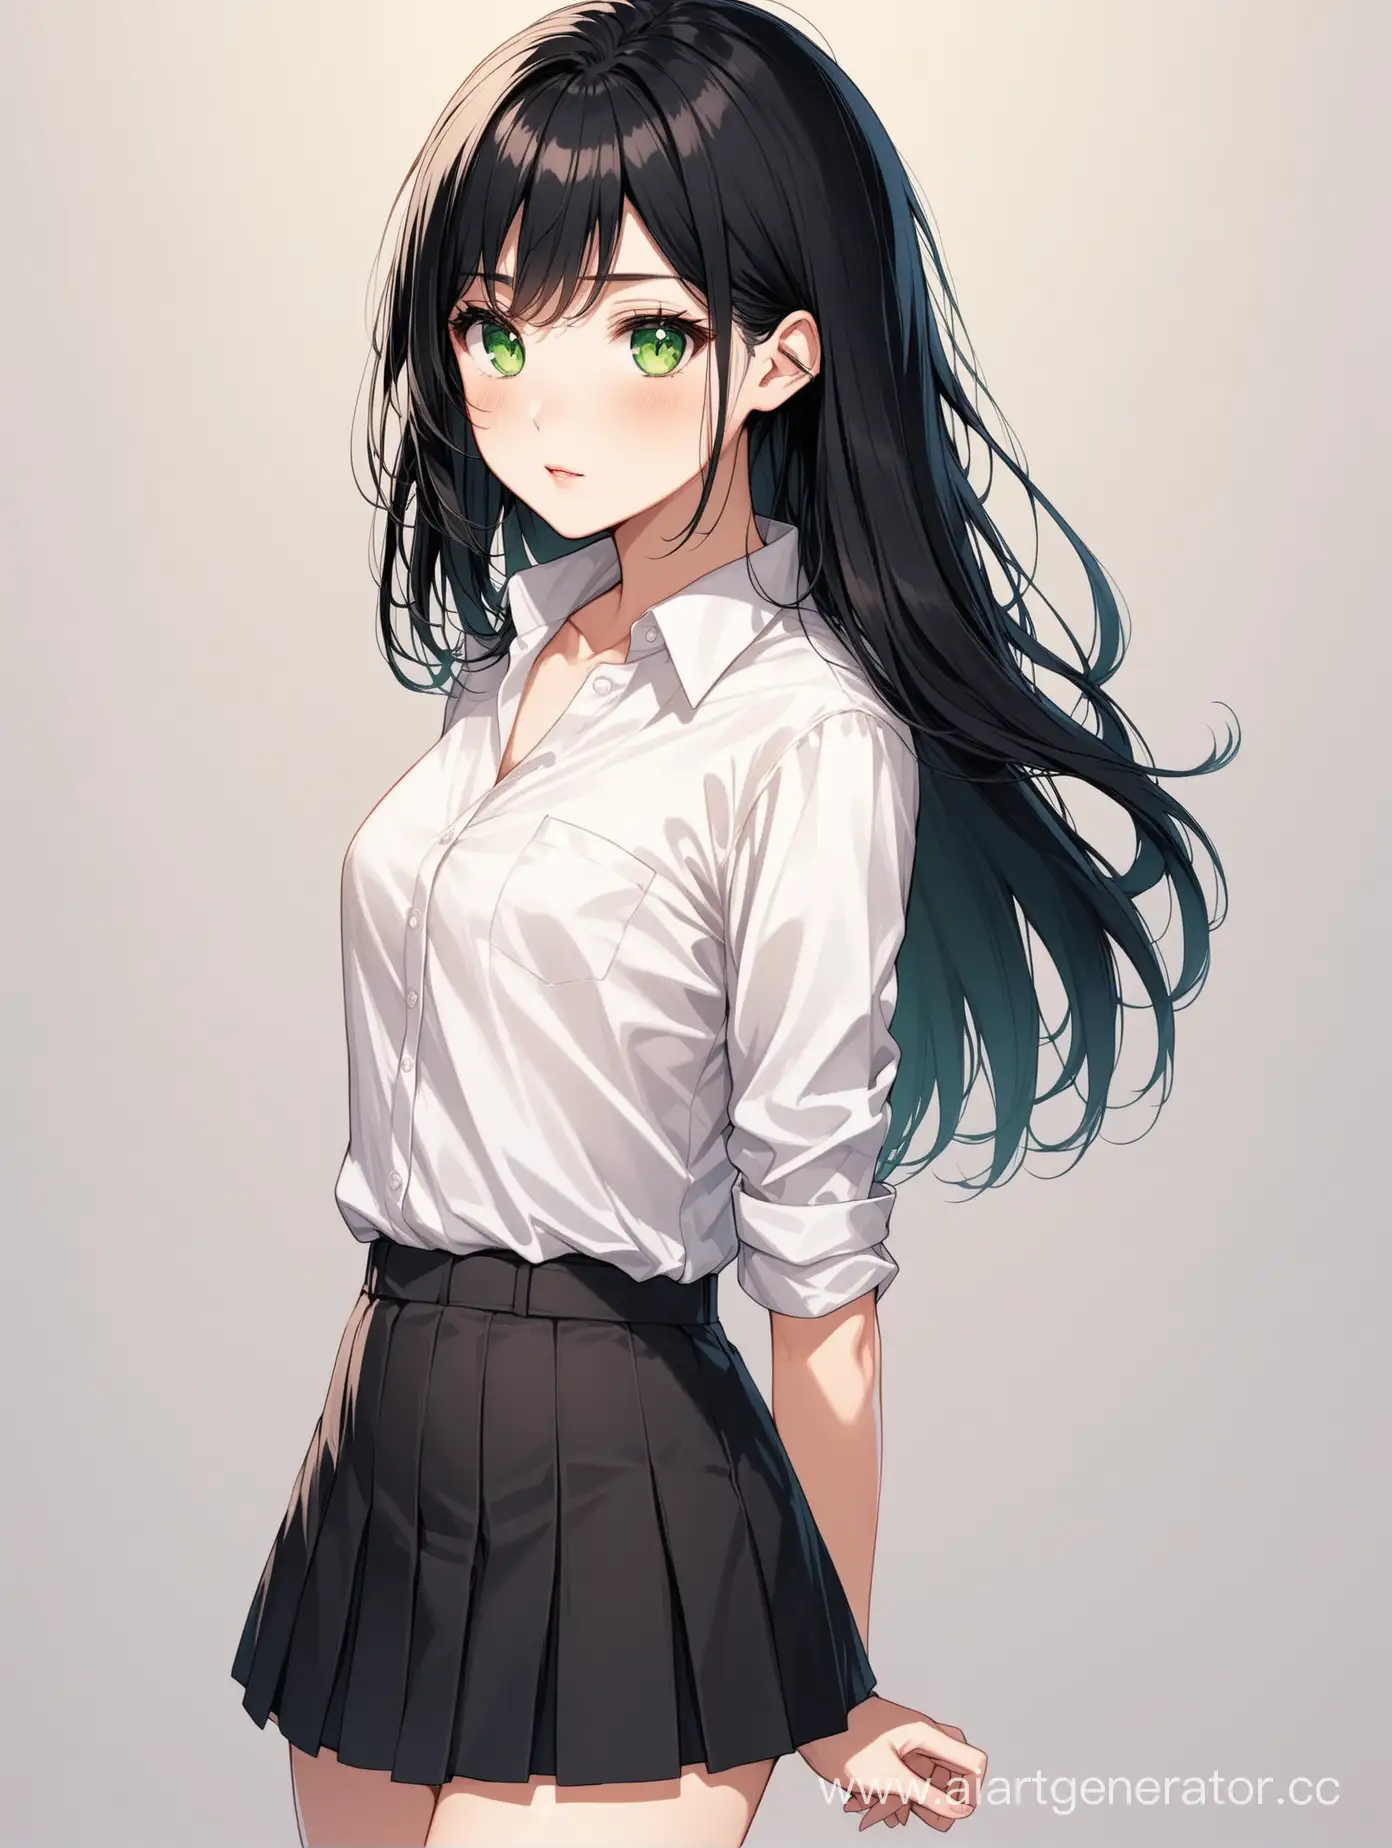 Девушка, зелёные глаза, средние чёрные волосы и светлая кожа, на ней одета рубашка заправленная в короткую юбку